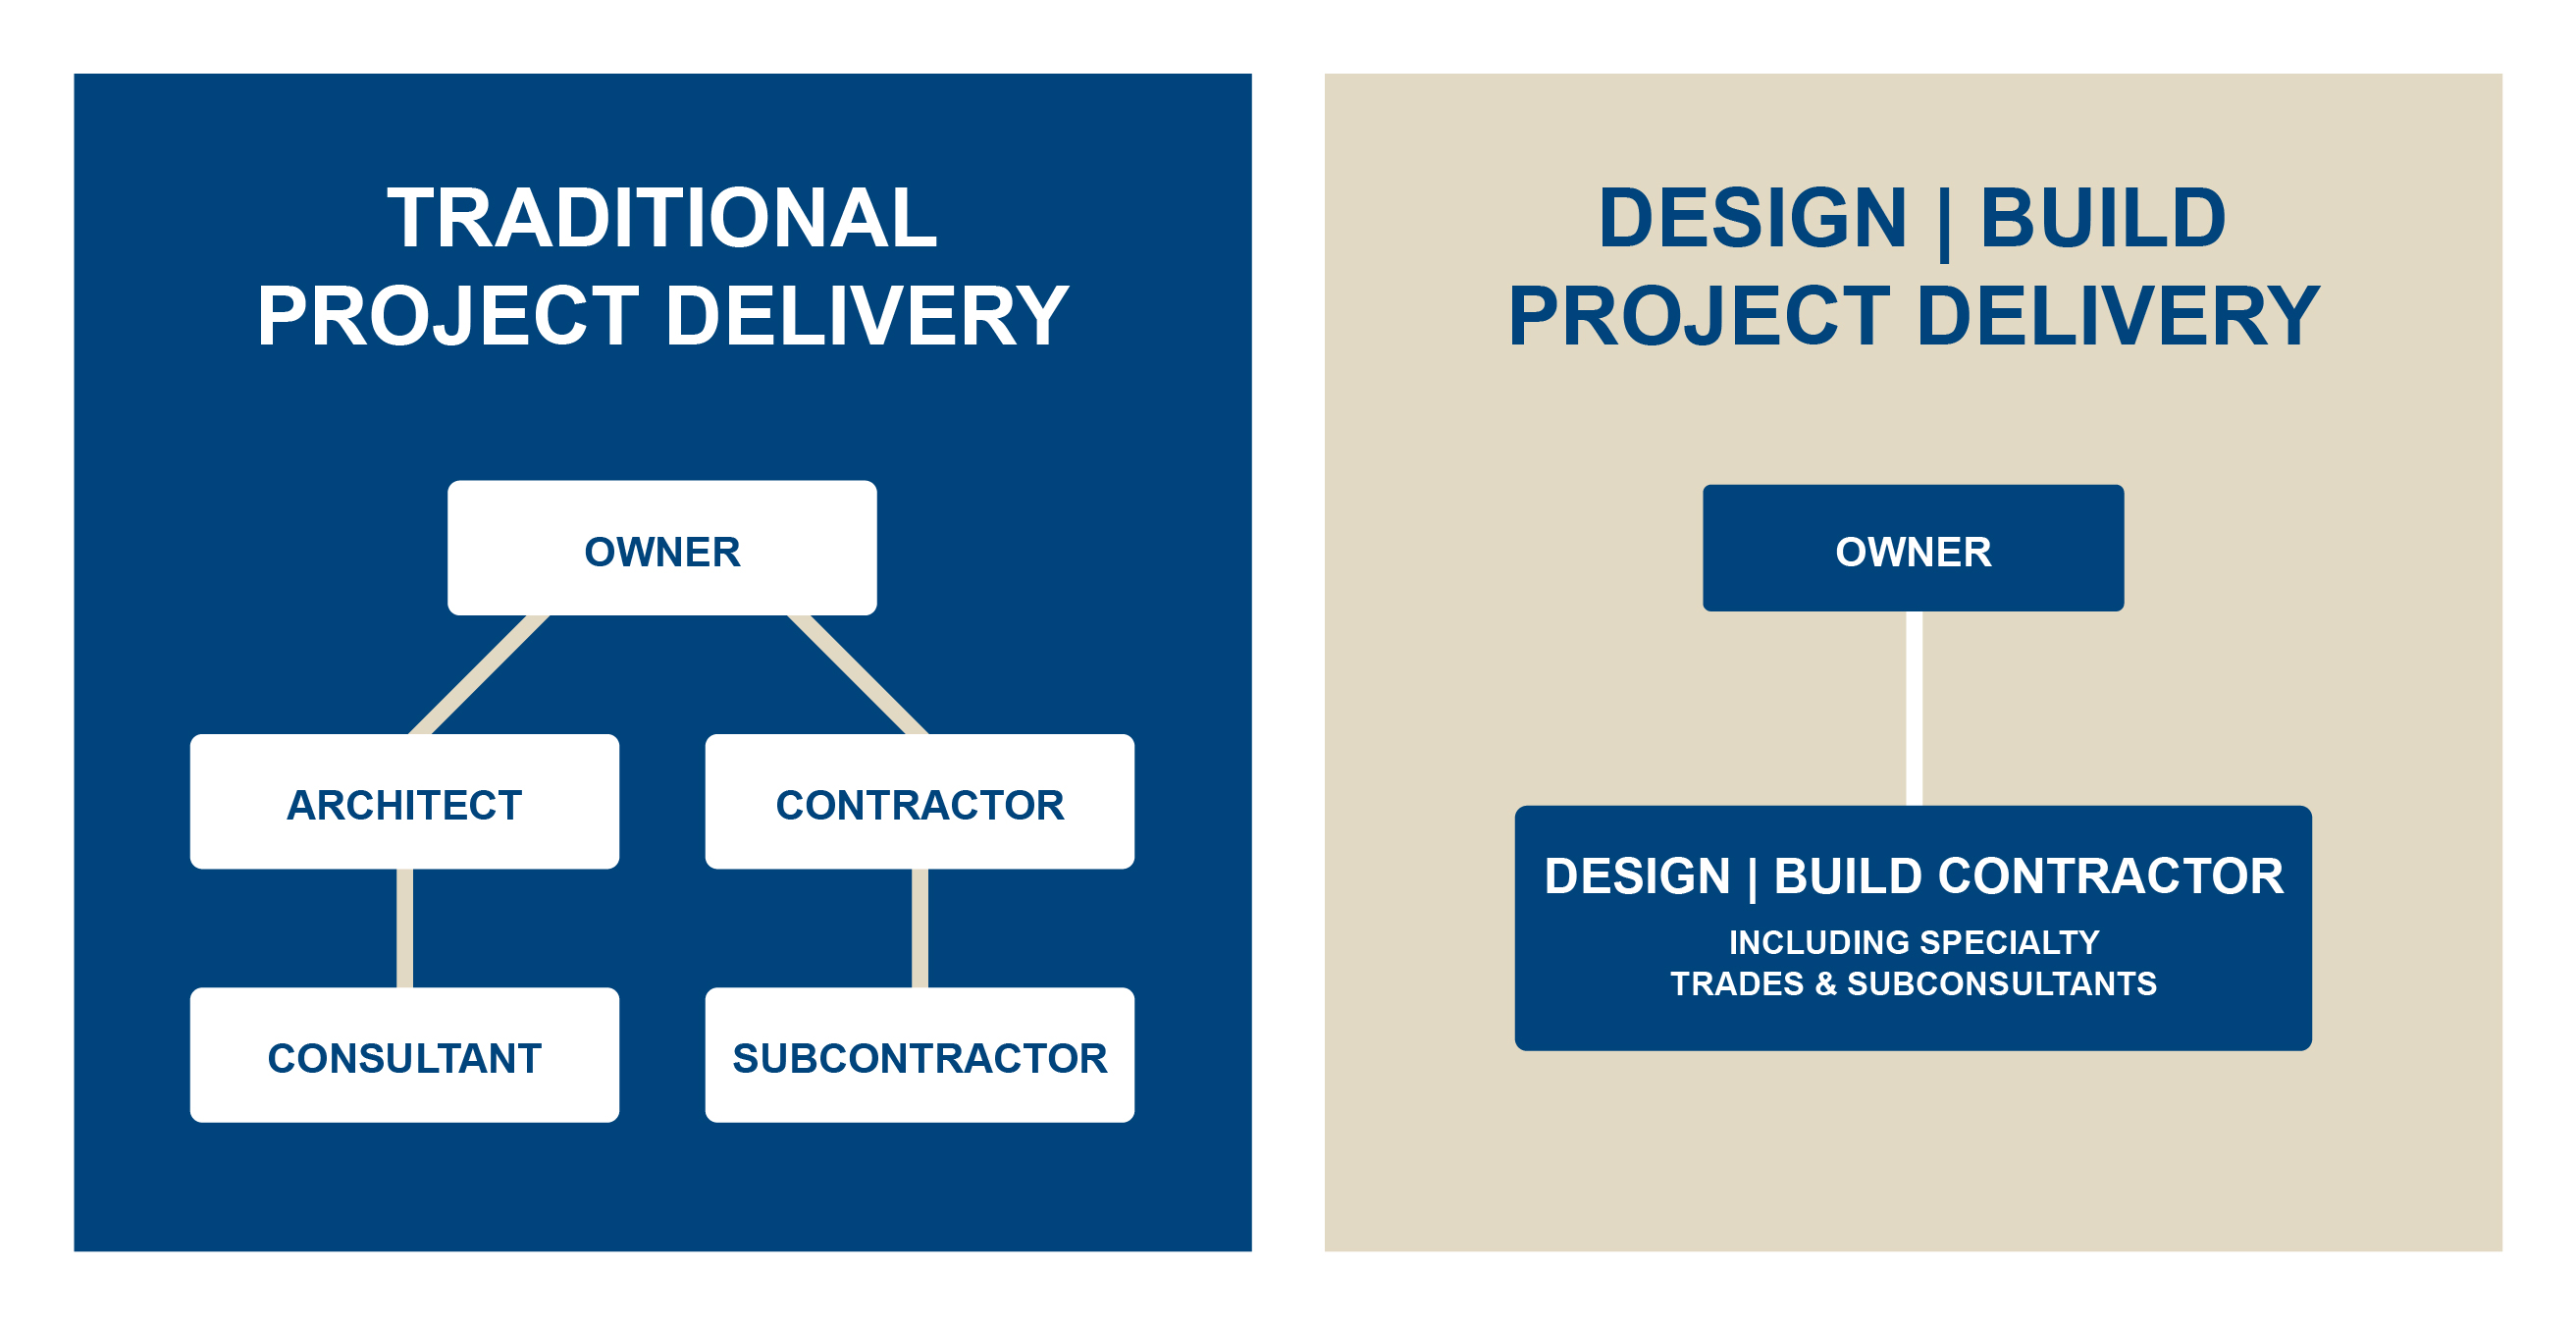 Design Build Construction